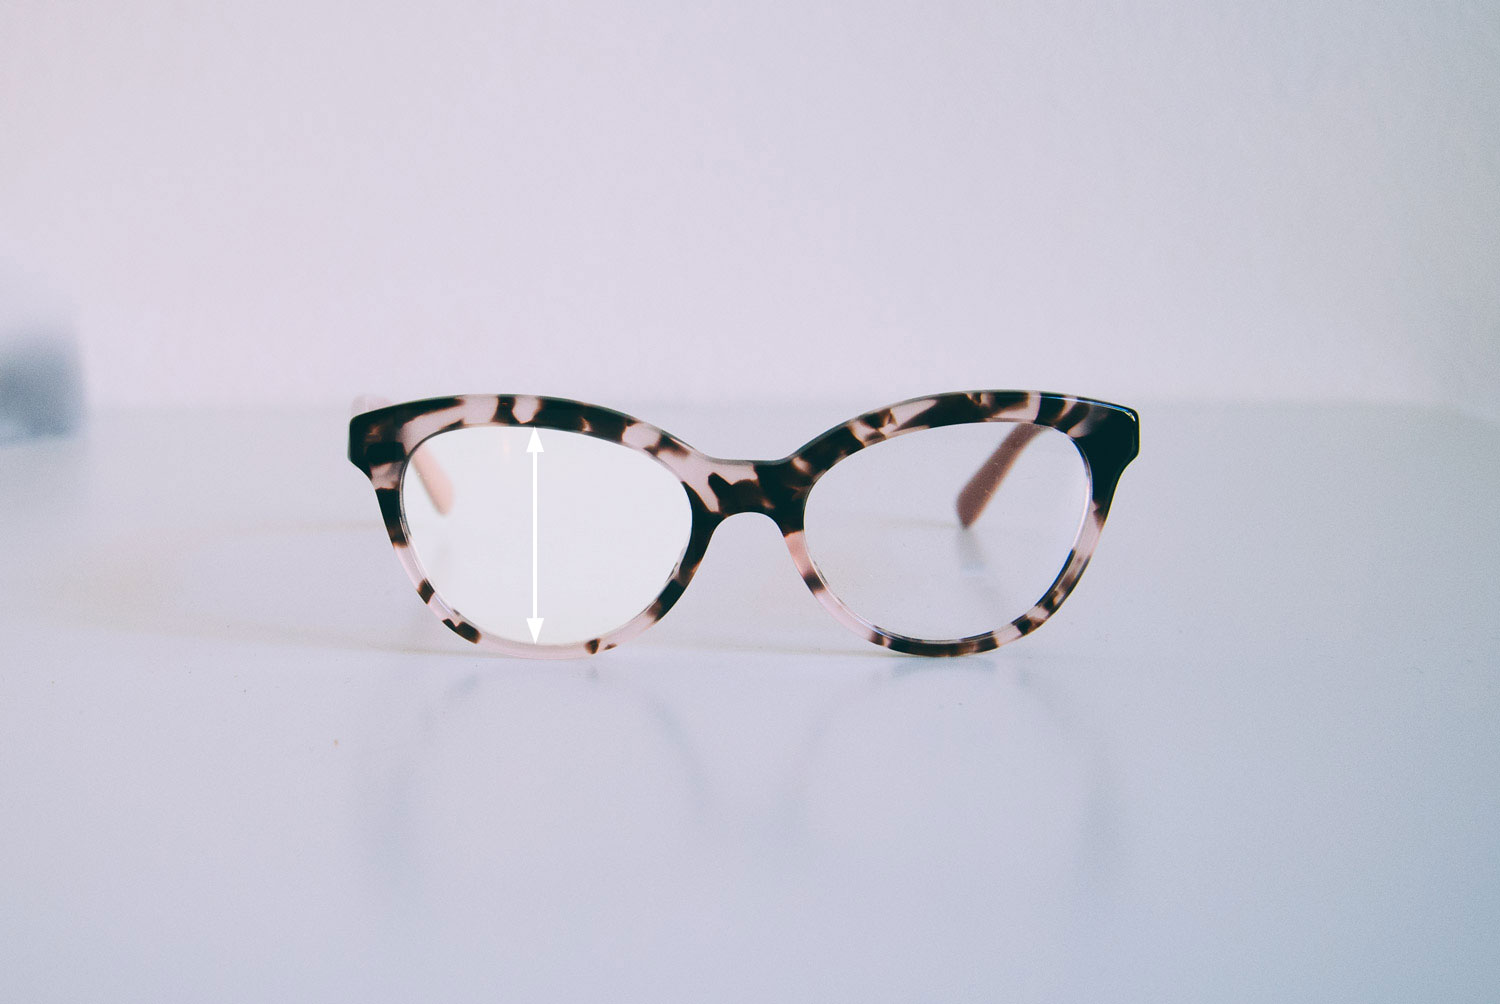 Obedient Gather we Mărimea contează - Cum să vă alegeți mărimea potrivită pentru ochelari |  eyerim blog